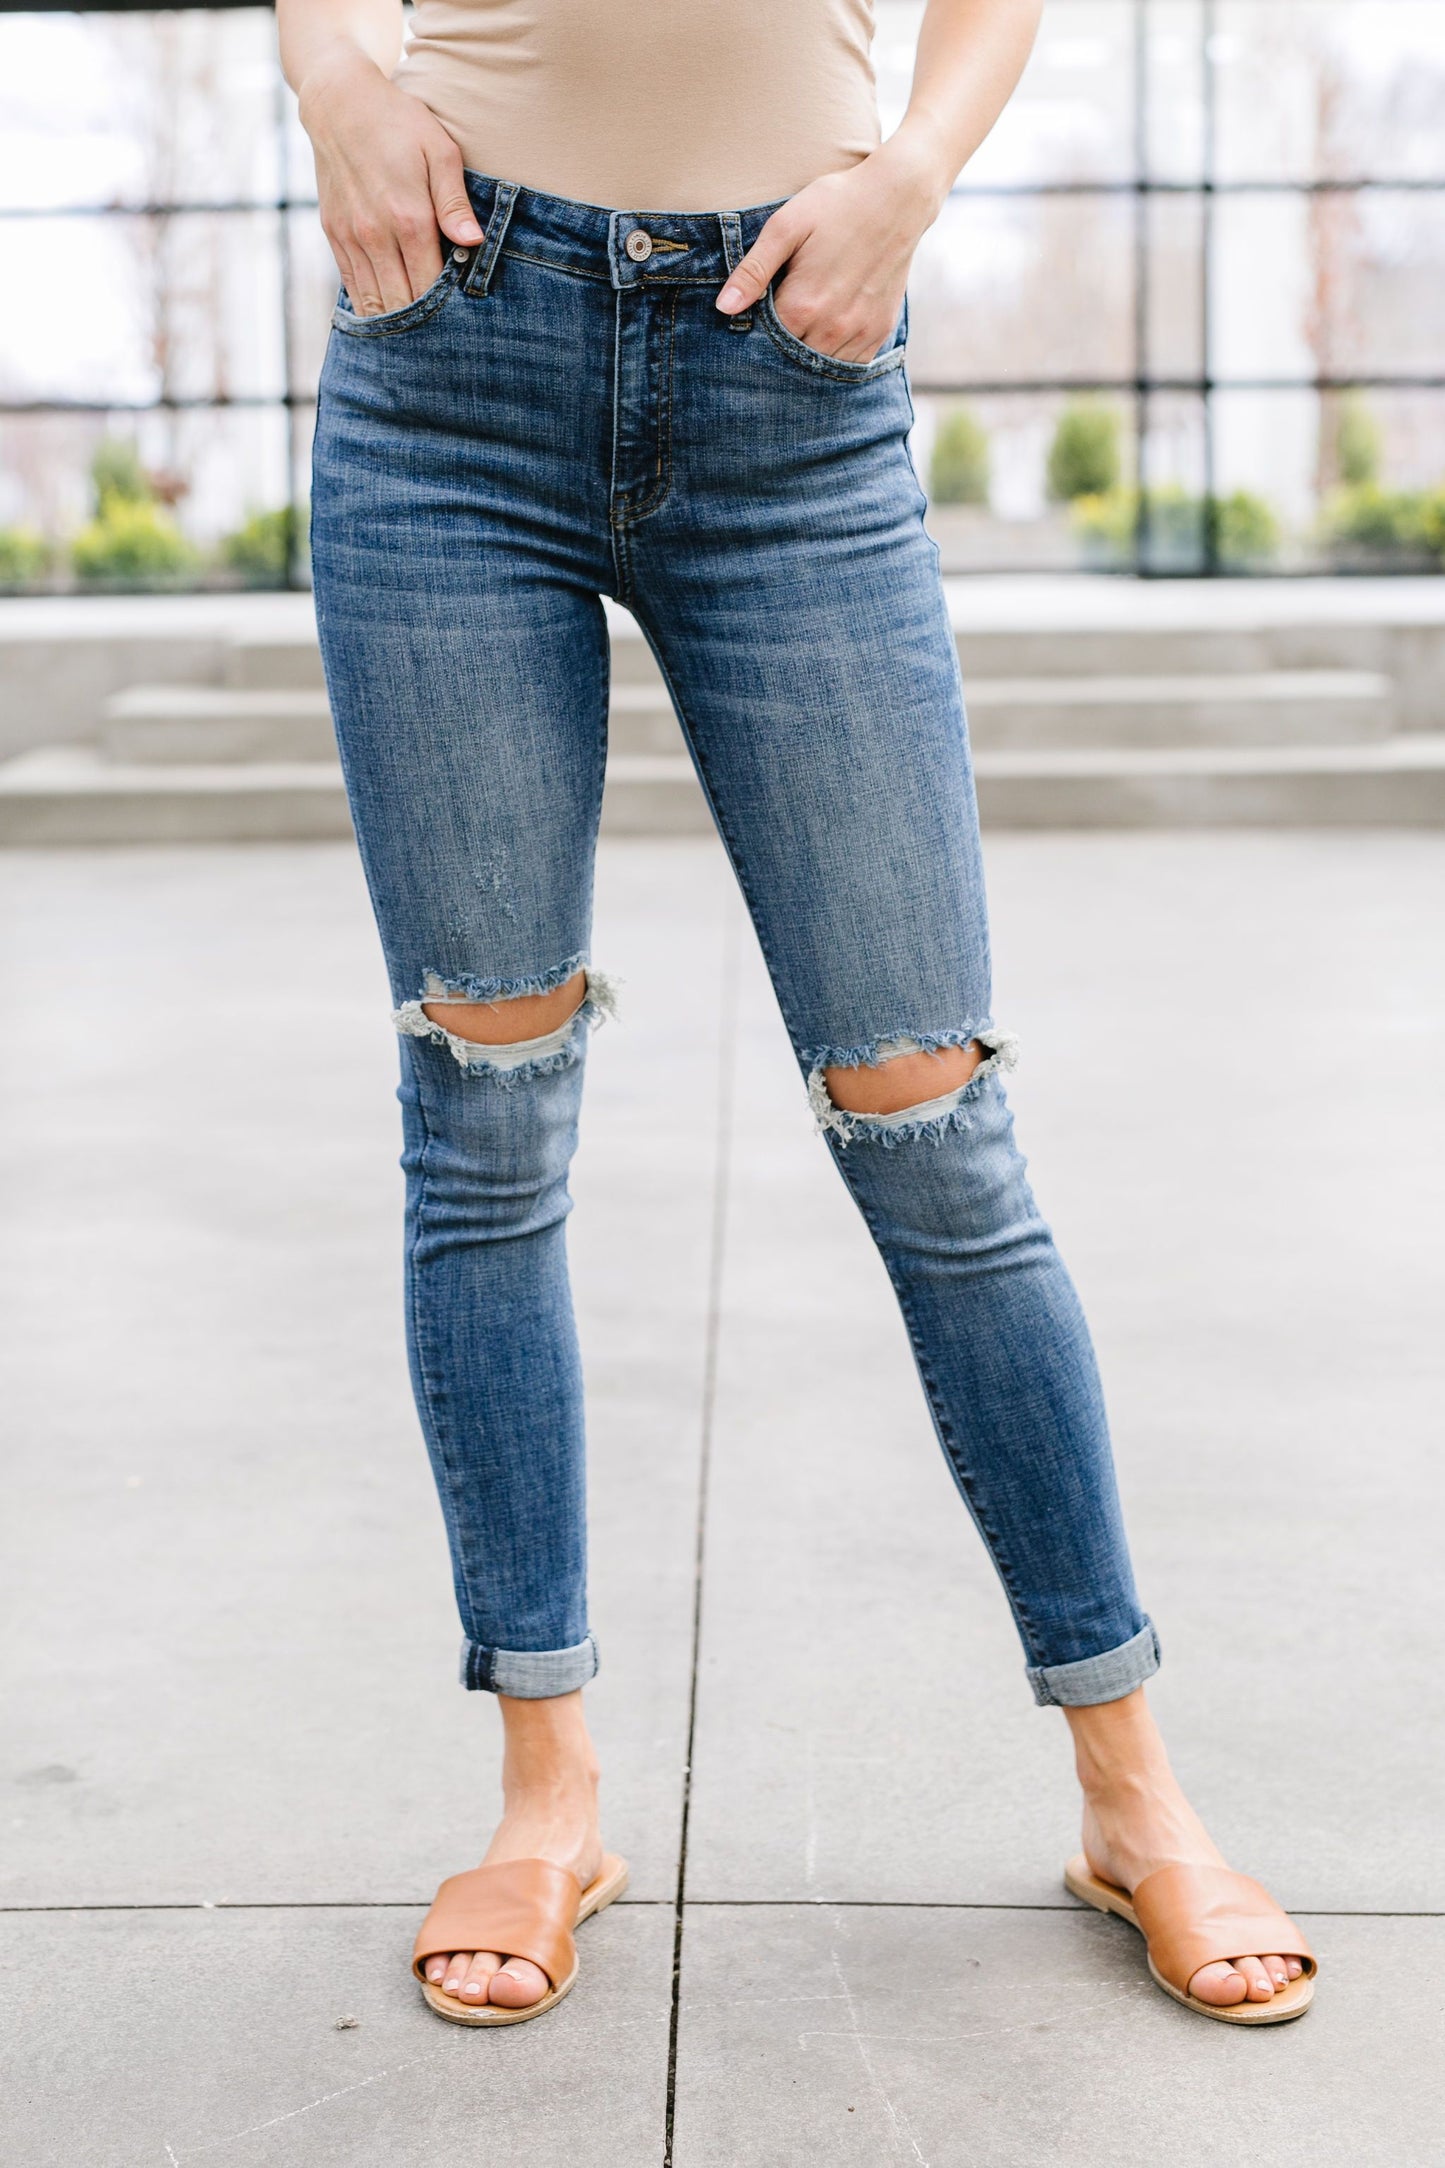 Skinned Knee Skinny Jeans